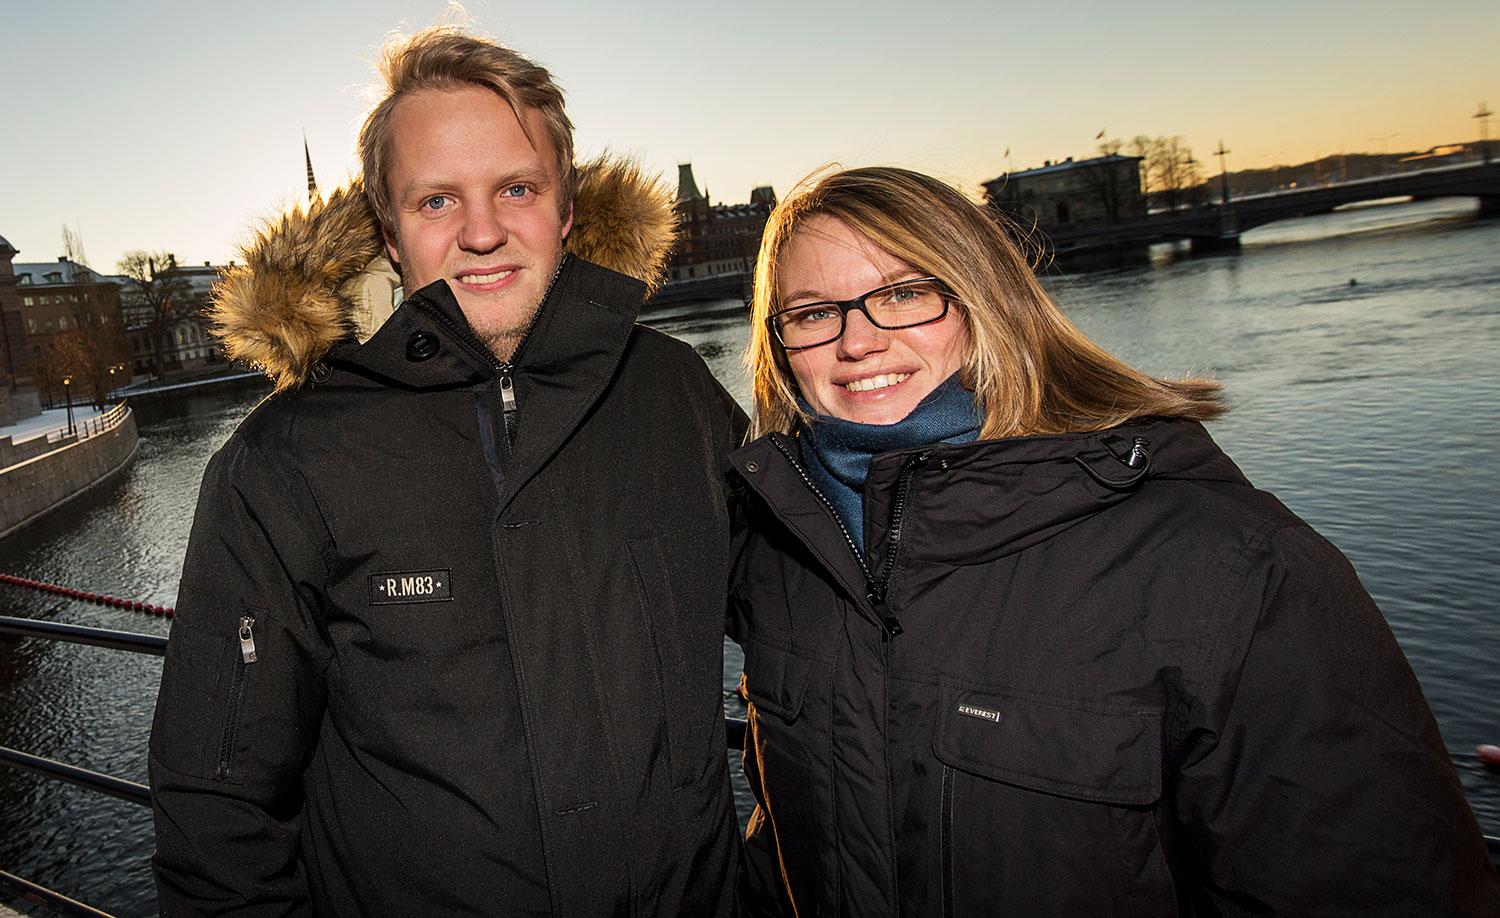 Malin Söderlund, 27, avfallshandläggare, Stockholm och Hannes Hagman, 25, konsultsäljare, Stockholm:
– Ja, det känns bra och tryggt. Det är bättre att de samarbetar.